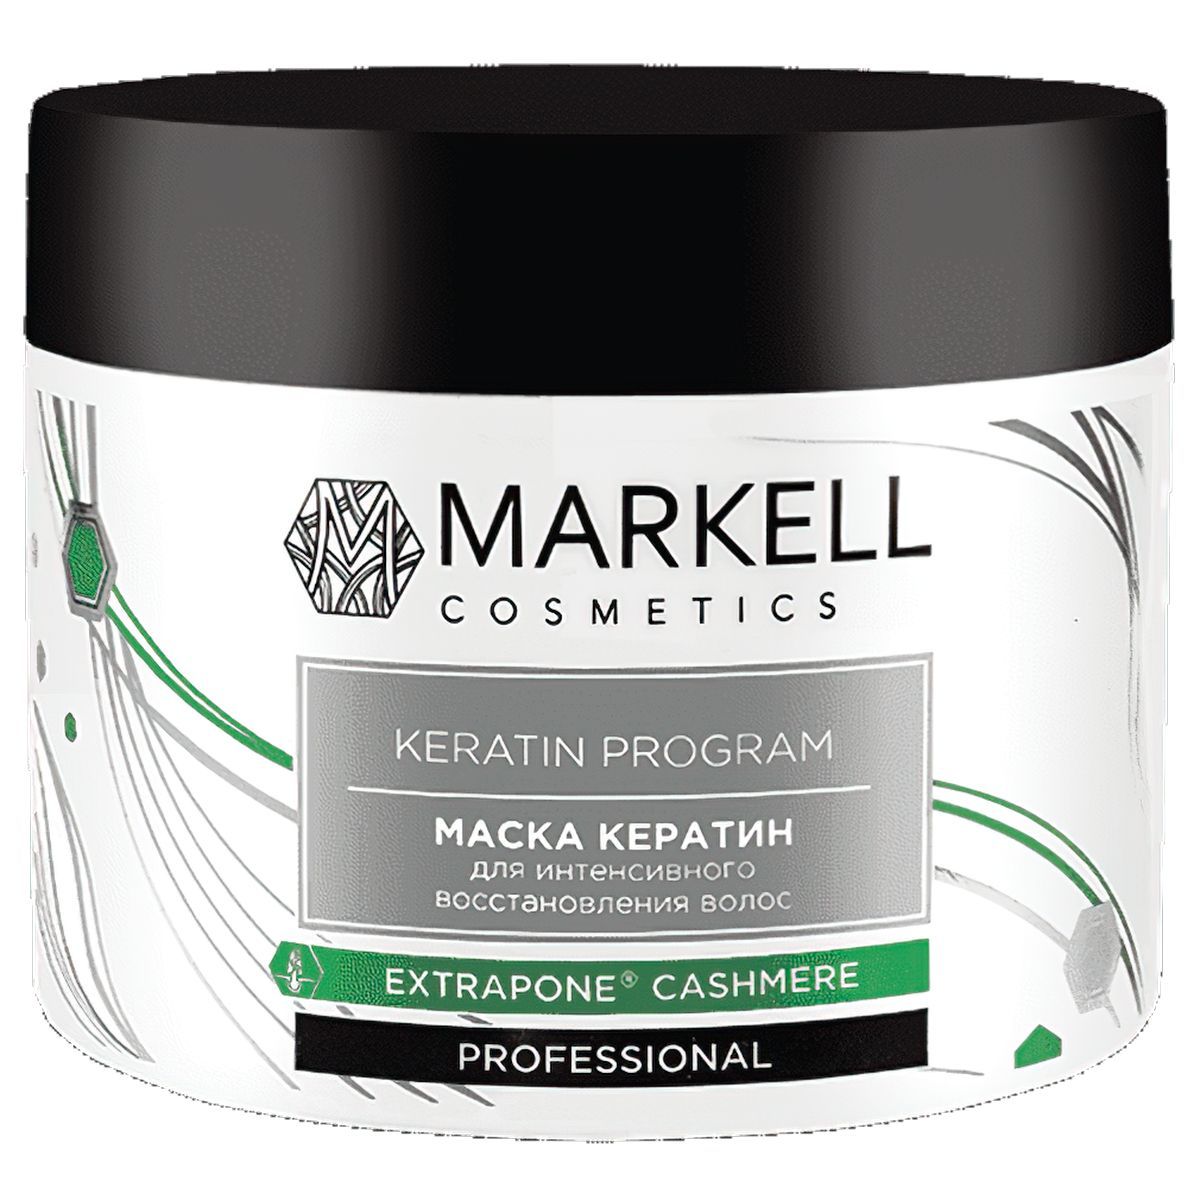 Маска для волос keratin отзывы. (Professional) маска для волос термозащита, 290г. Markell Anti hair loss Programm маска для волос. Markell Keratin. (Markell professional) маска для волос термозащита, 290г.